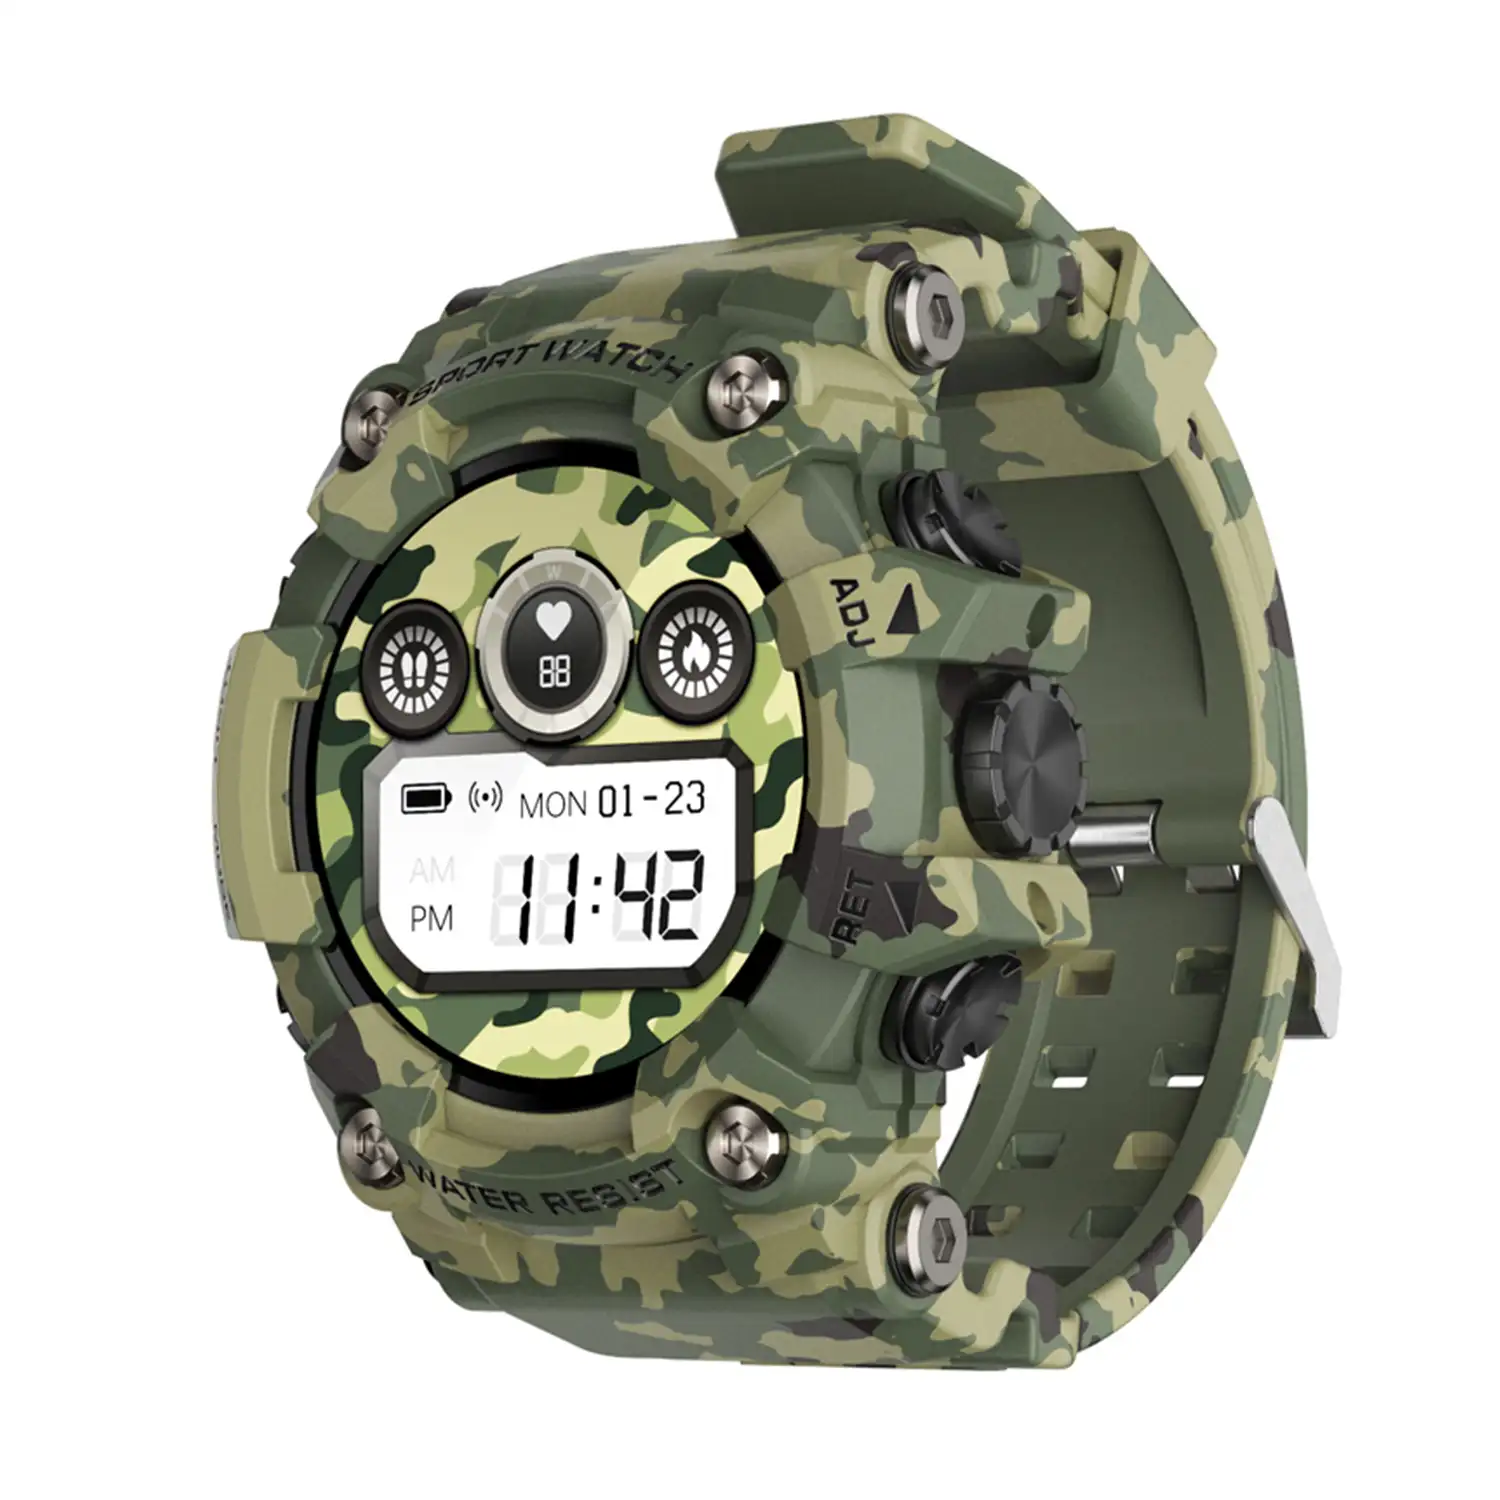 Smartwatch T6 con carcasa de alta resistencia. Monitor cardiaco dinámico, varios modos deportivos e informacion meteorológica.